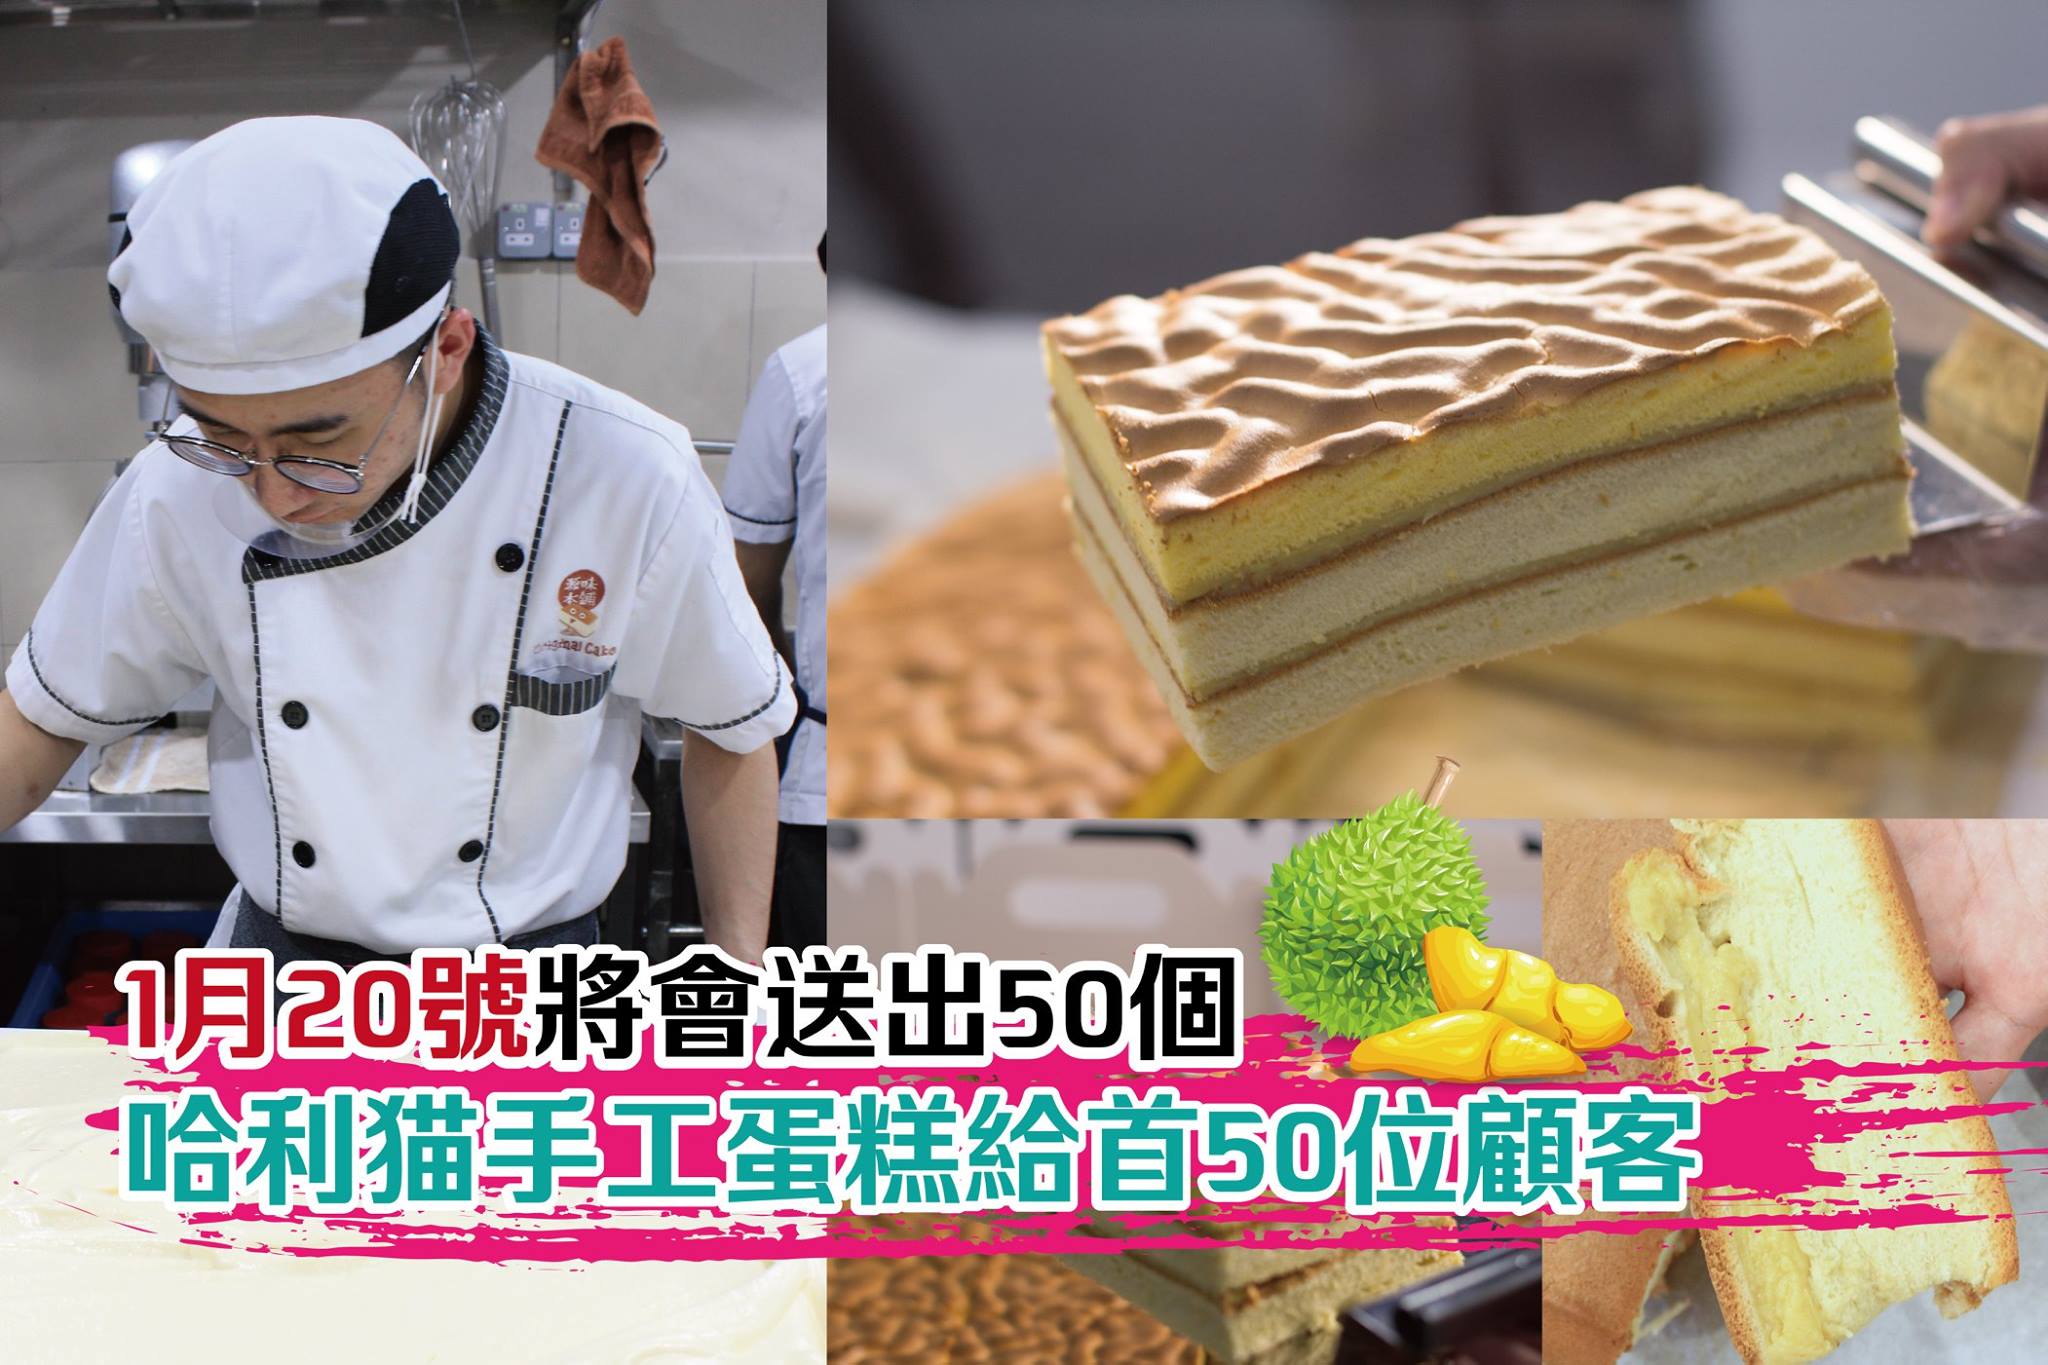 Harimao Handmade Cake Series